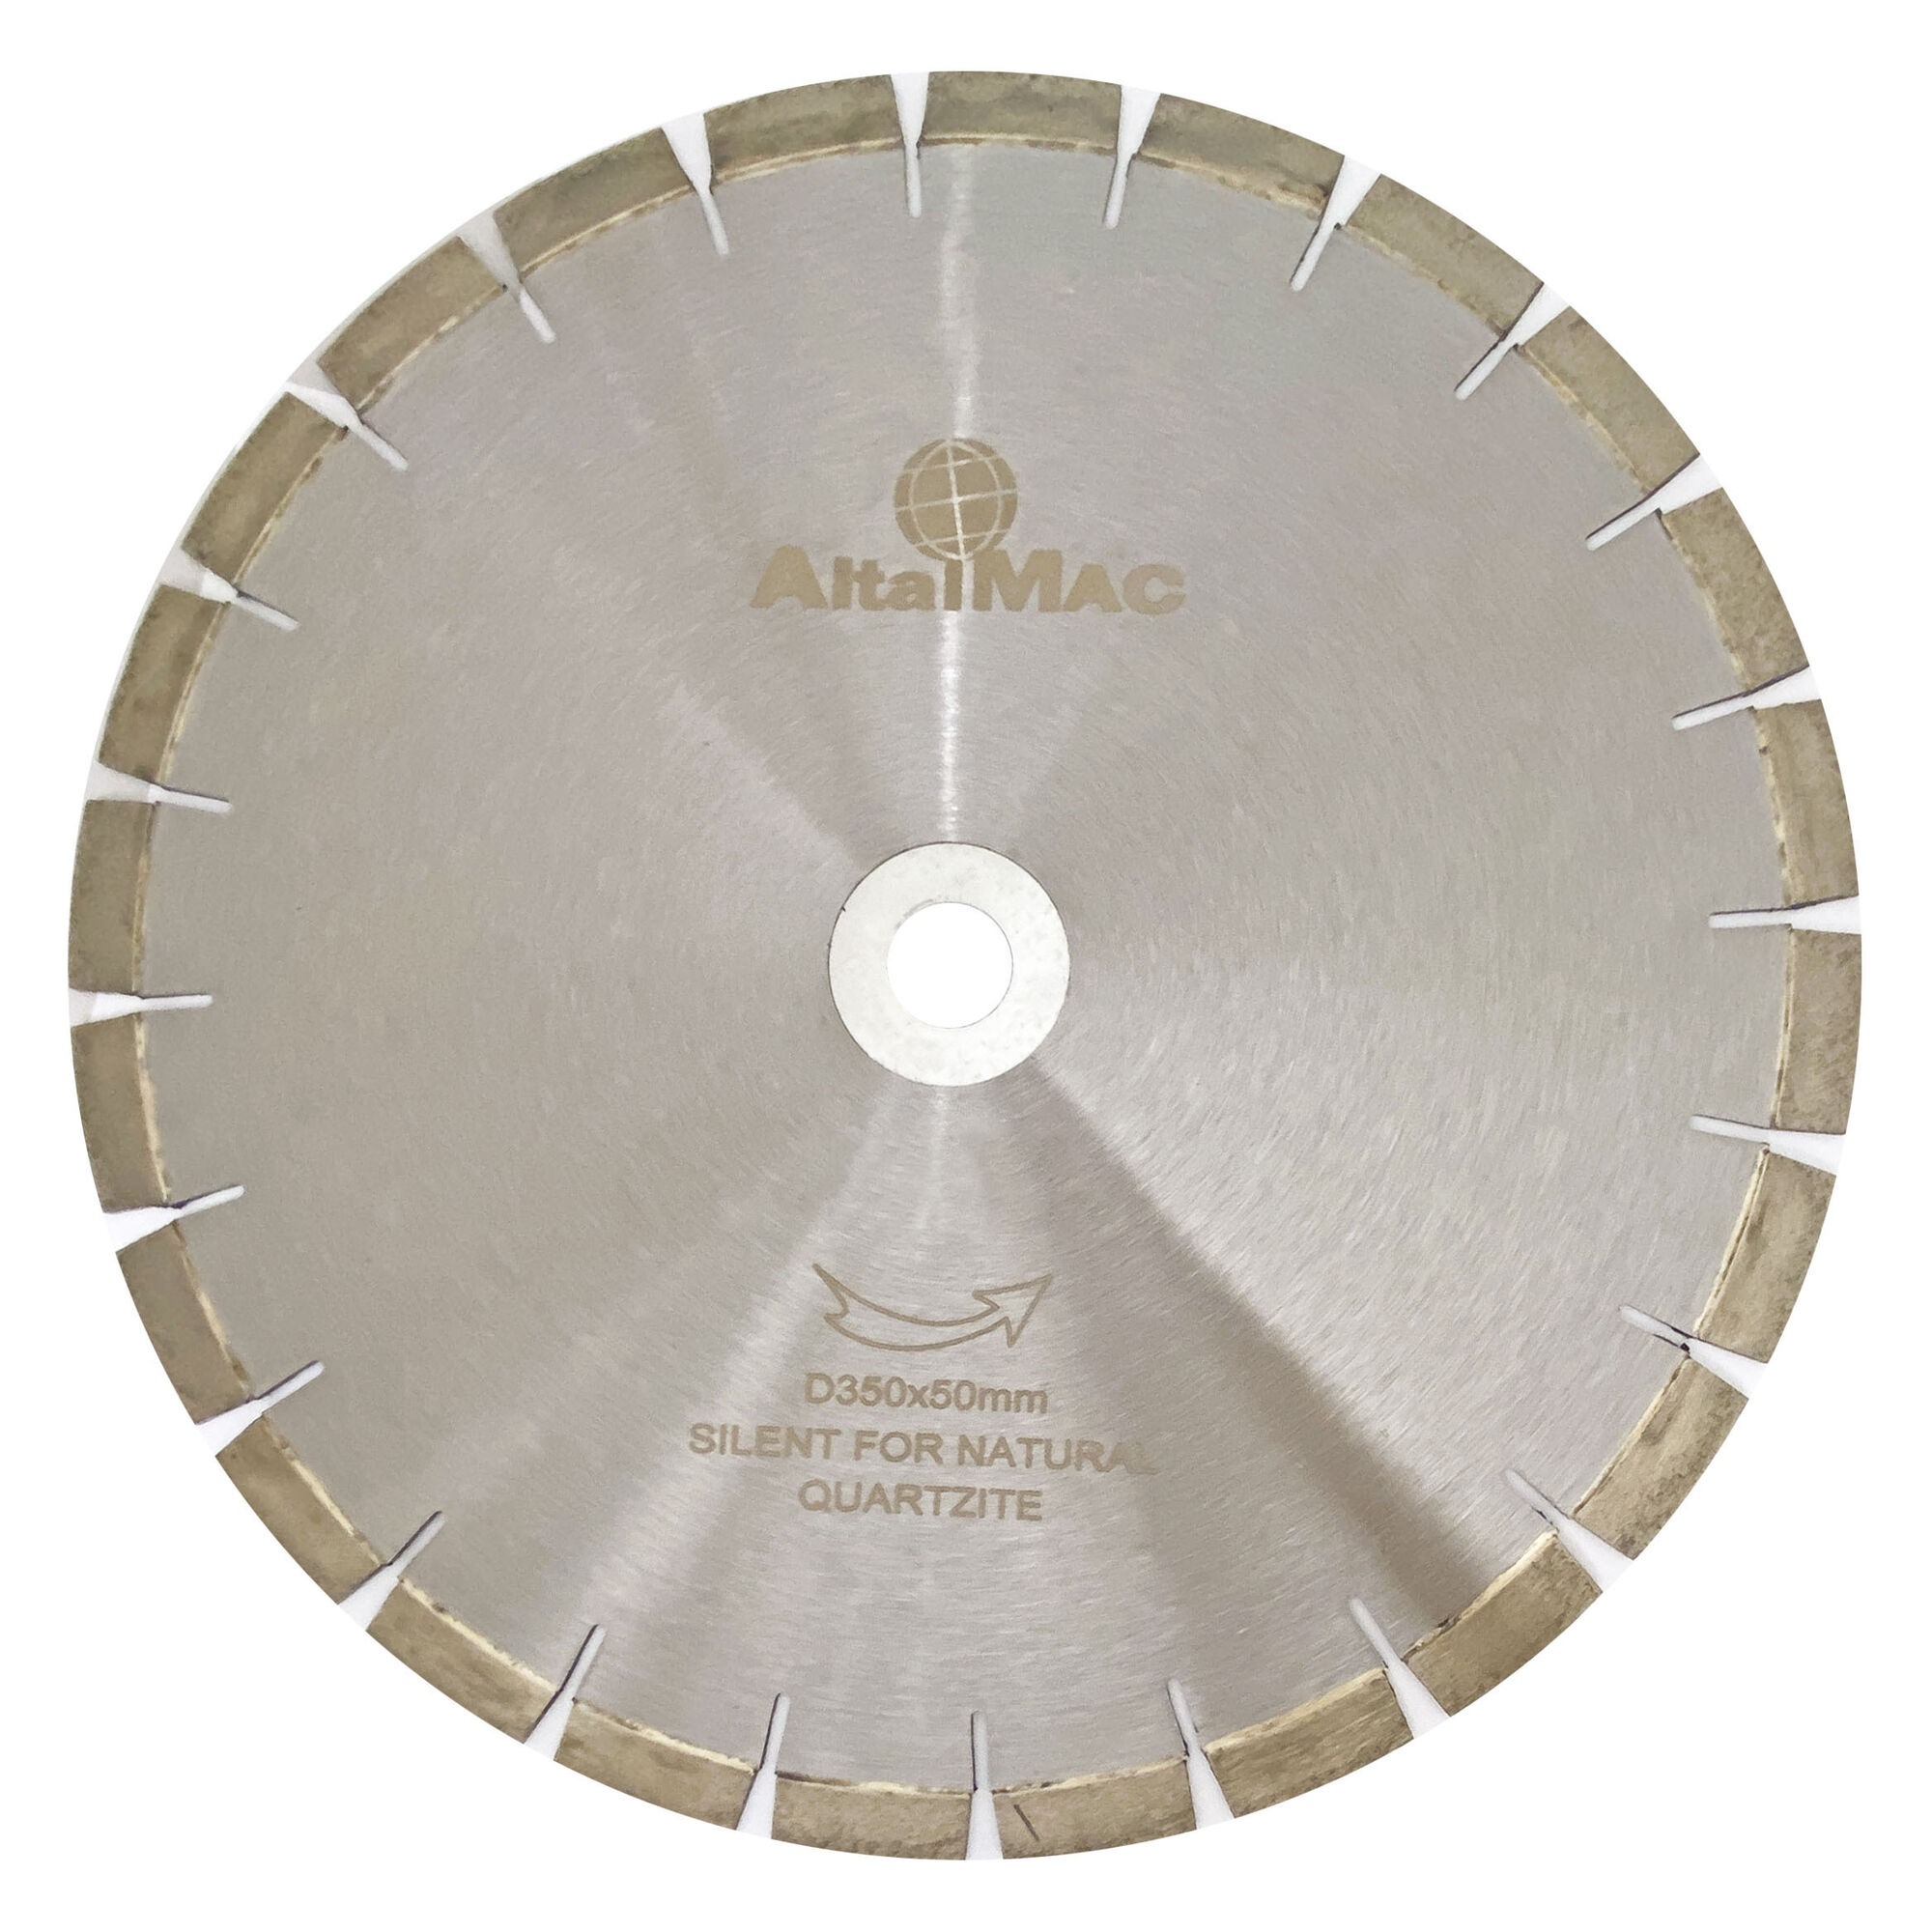 Диск алмазный сегментный AITALMAC ? 350/50 для резки натурального кварцита (бесшумный), H15 мм